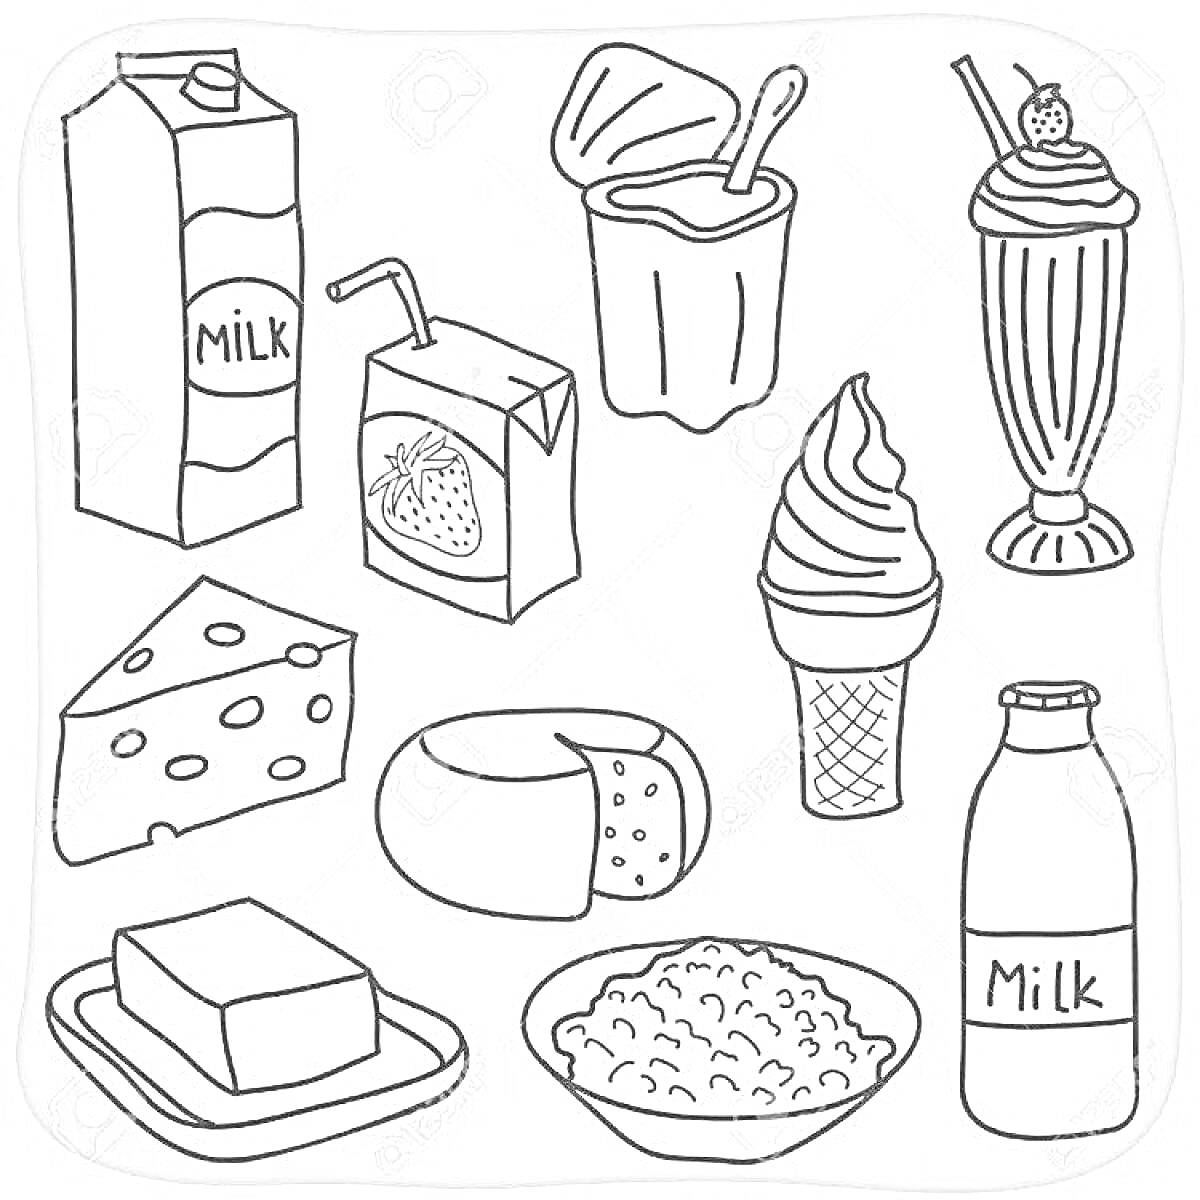 Раскраска Картон молока, йогурт с ложкой, молочный коктейль с вишенкой, коробка сока с трубочкой, сыр с дырками, круглый сыр, мороженое в рожке, бутылка молока, масло на блюдце, творог в миске